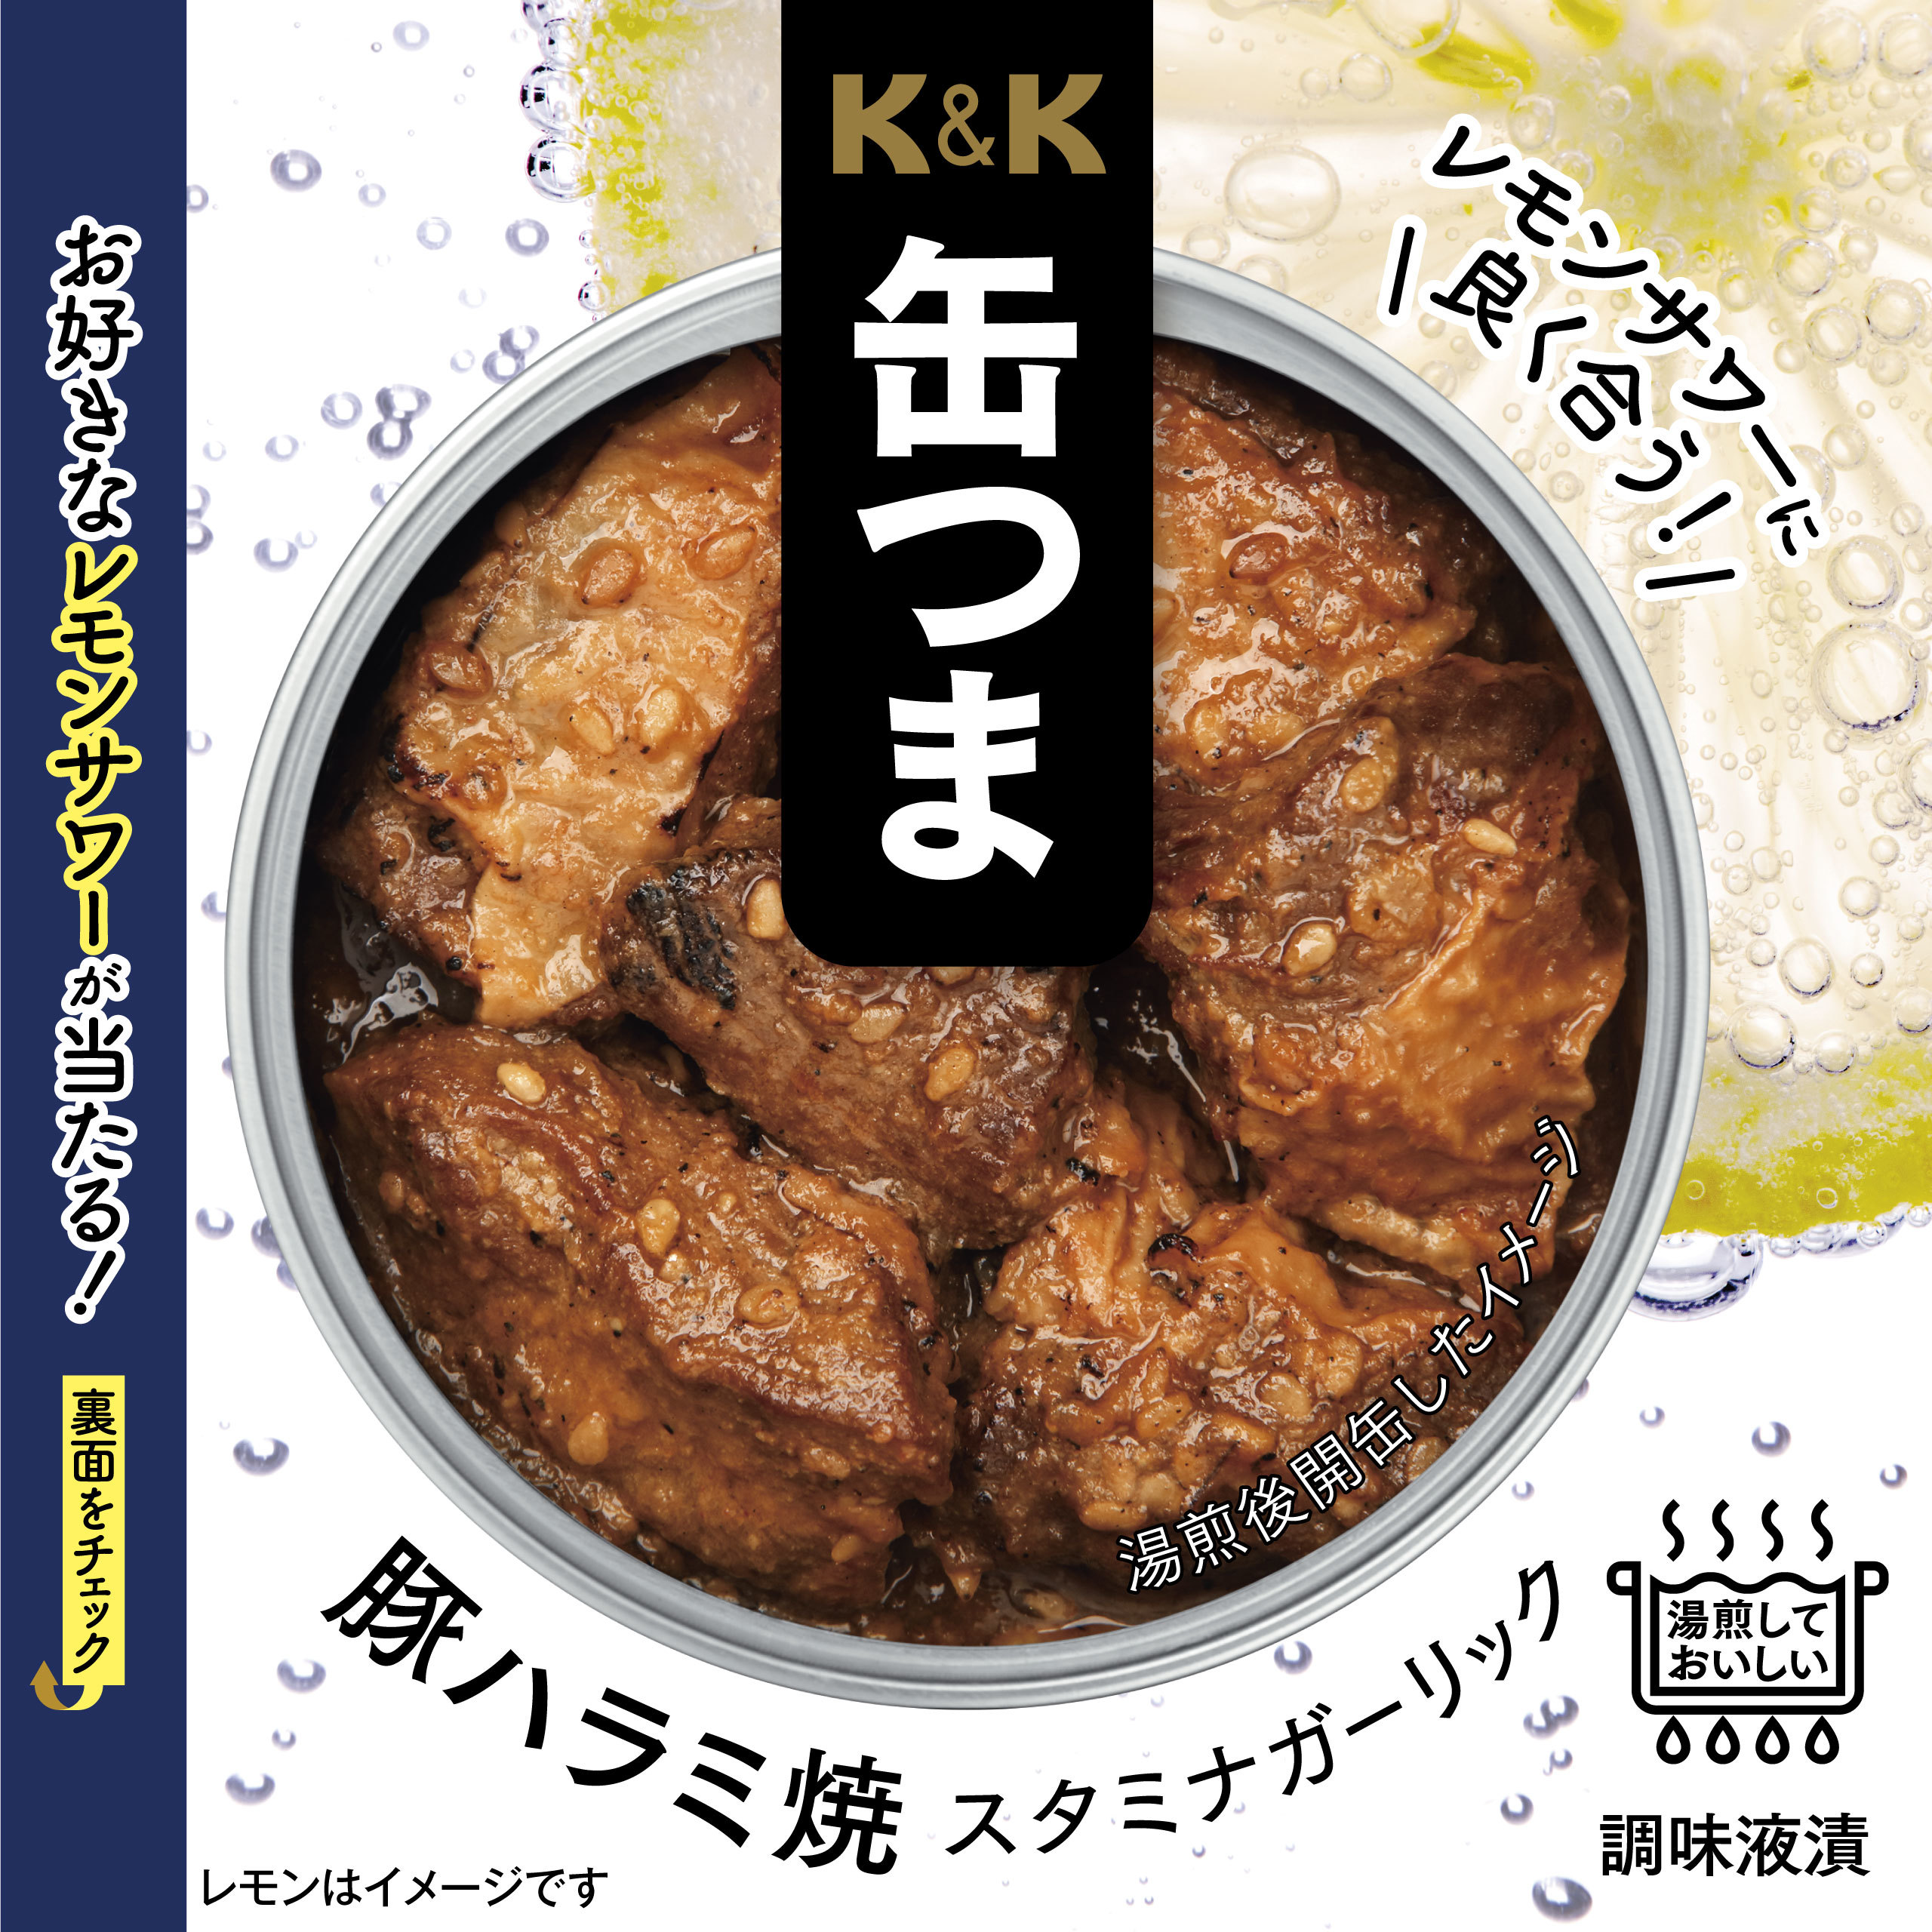 レモンサワーに合う
「K&K缶つま 豚ハラミ焼スタミナガーリック」を発売